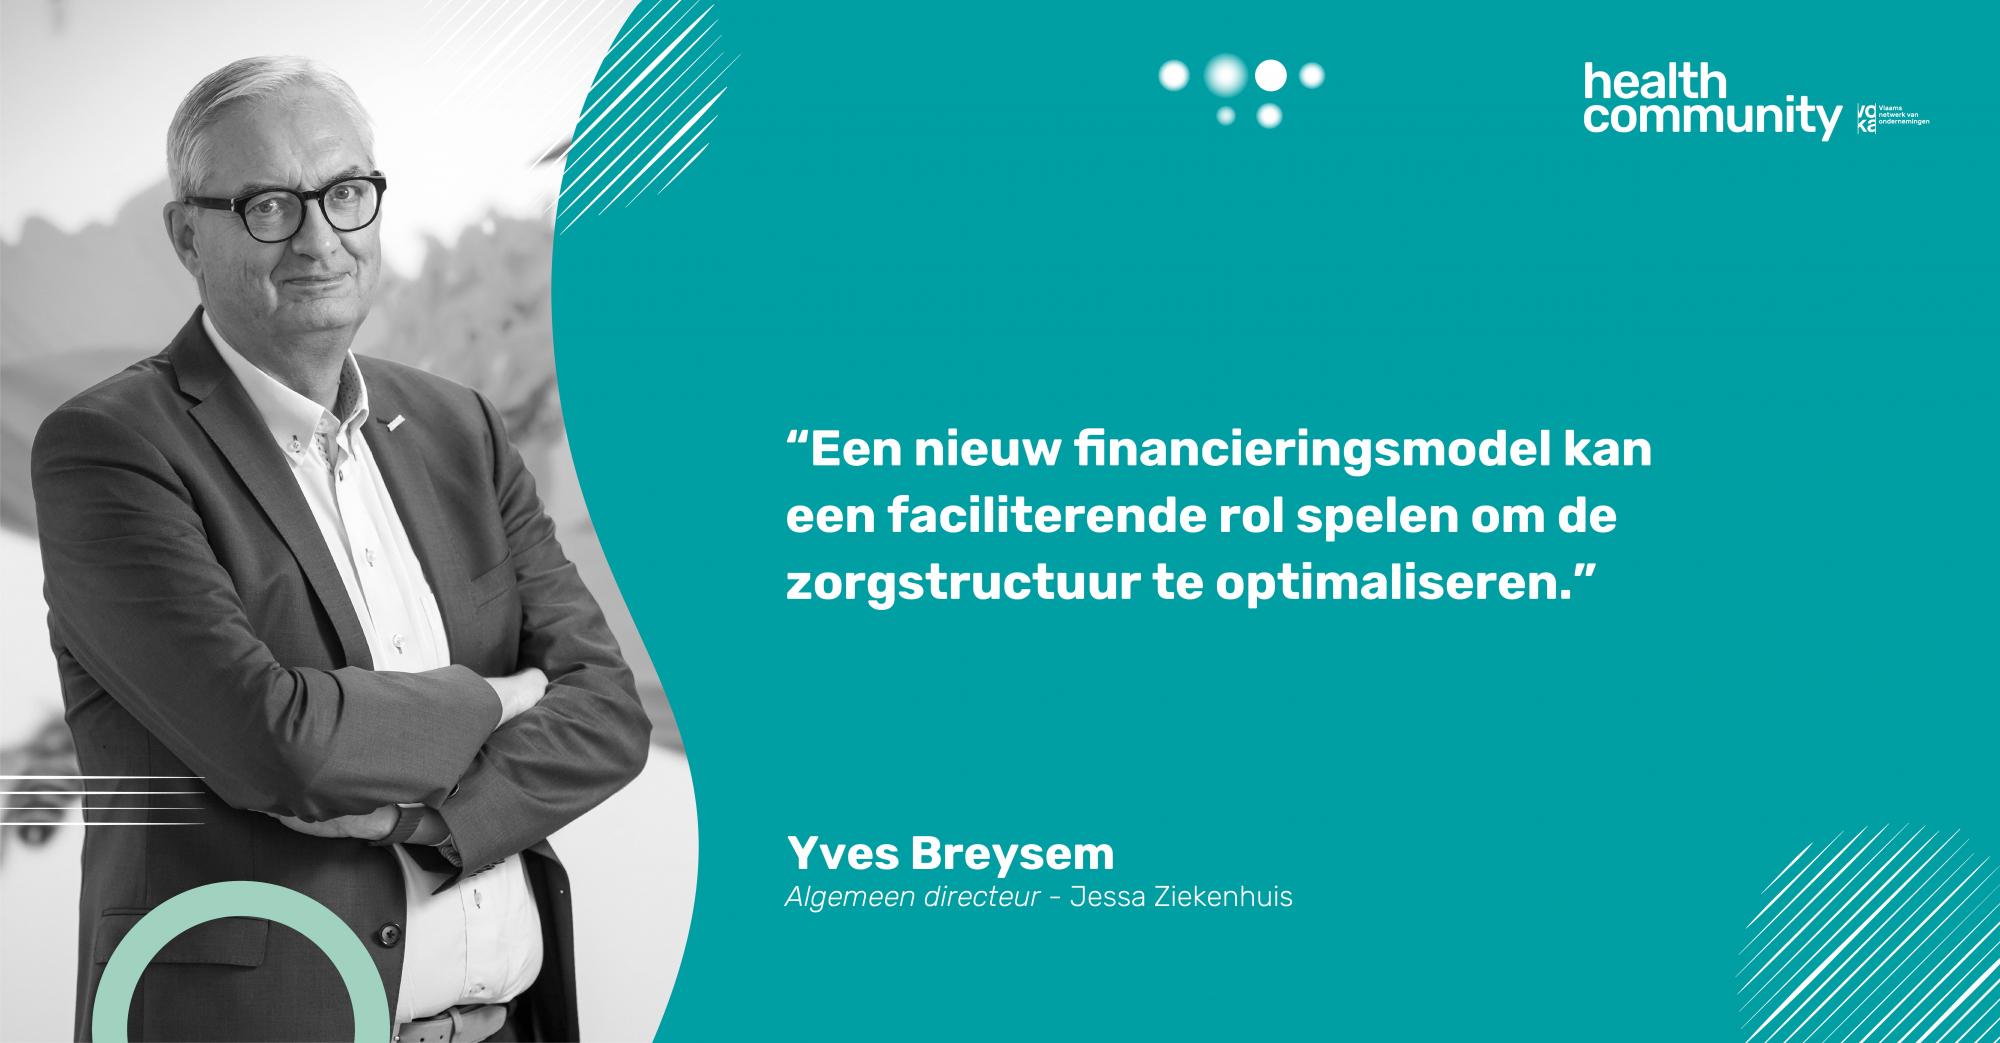 Yves Breysem - Algemeen directeur Jessa Ziekenhuis